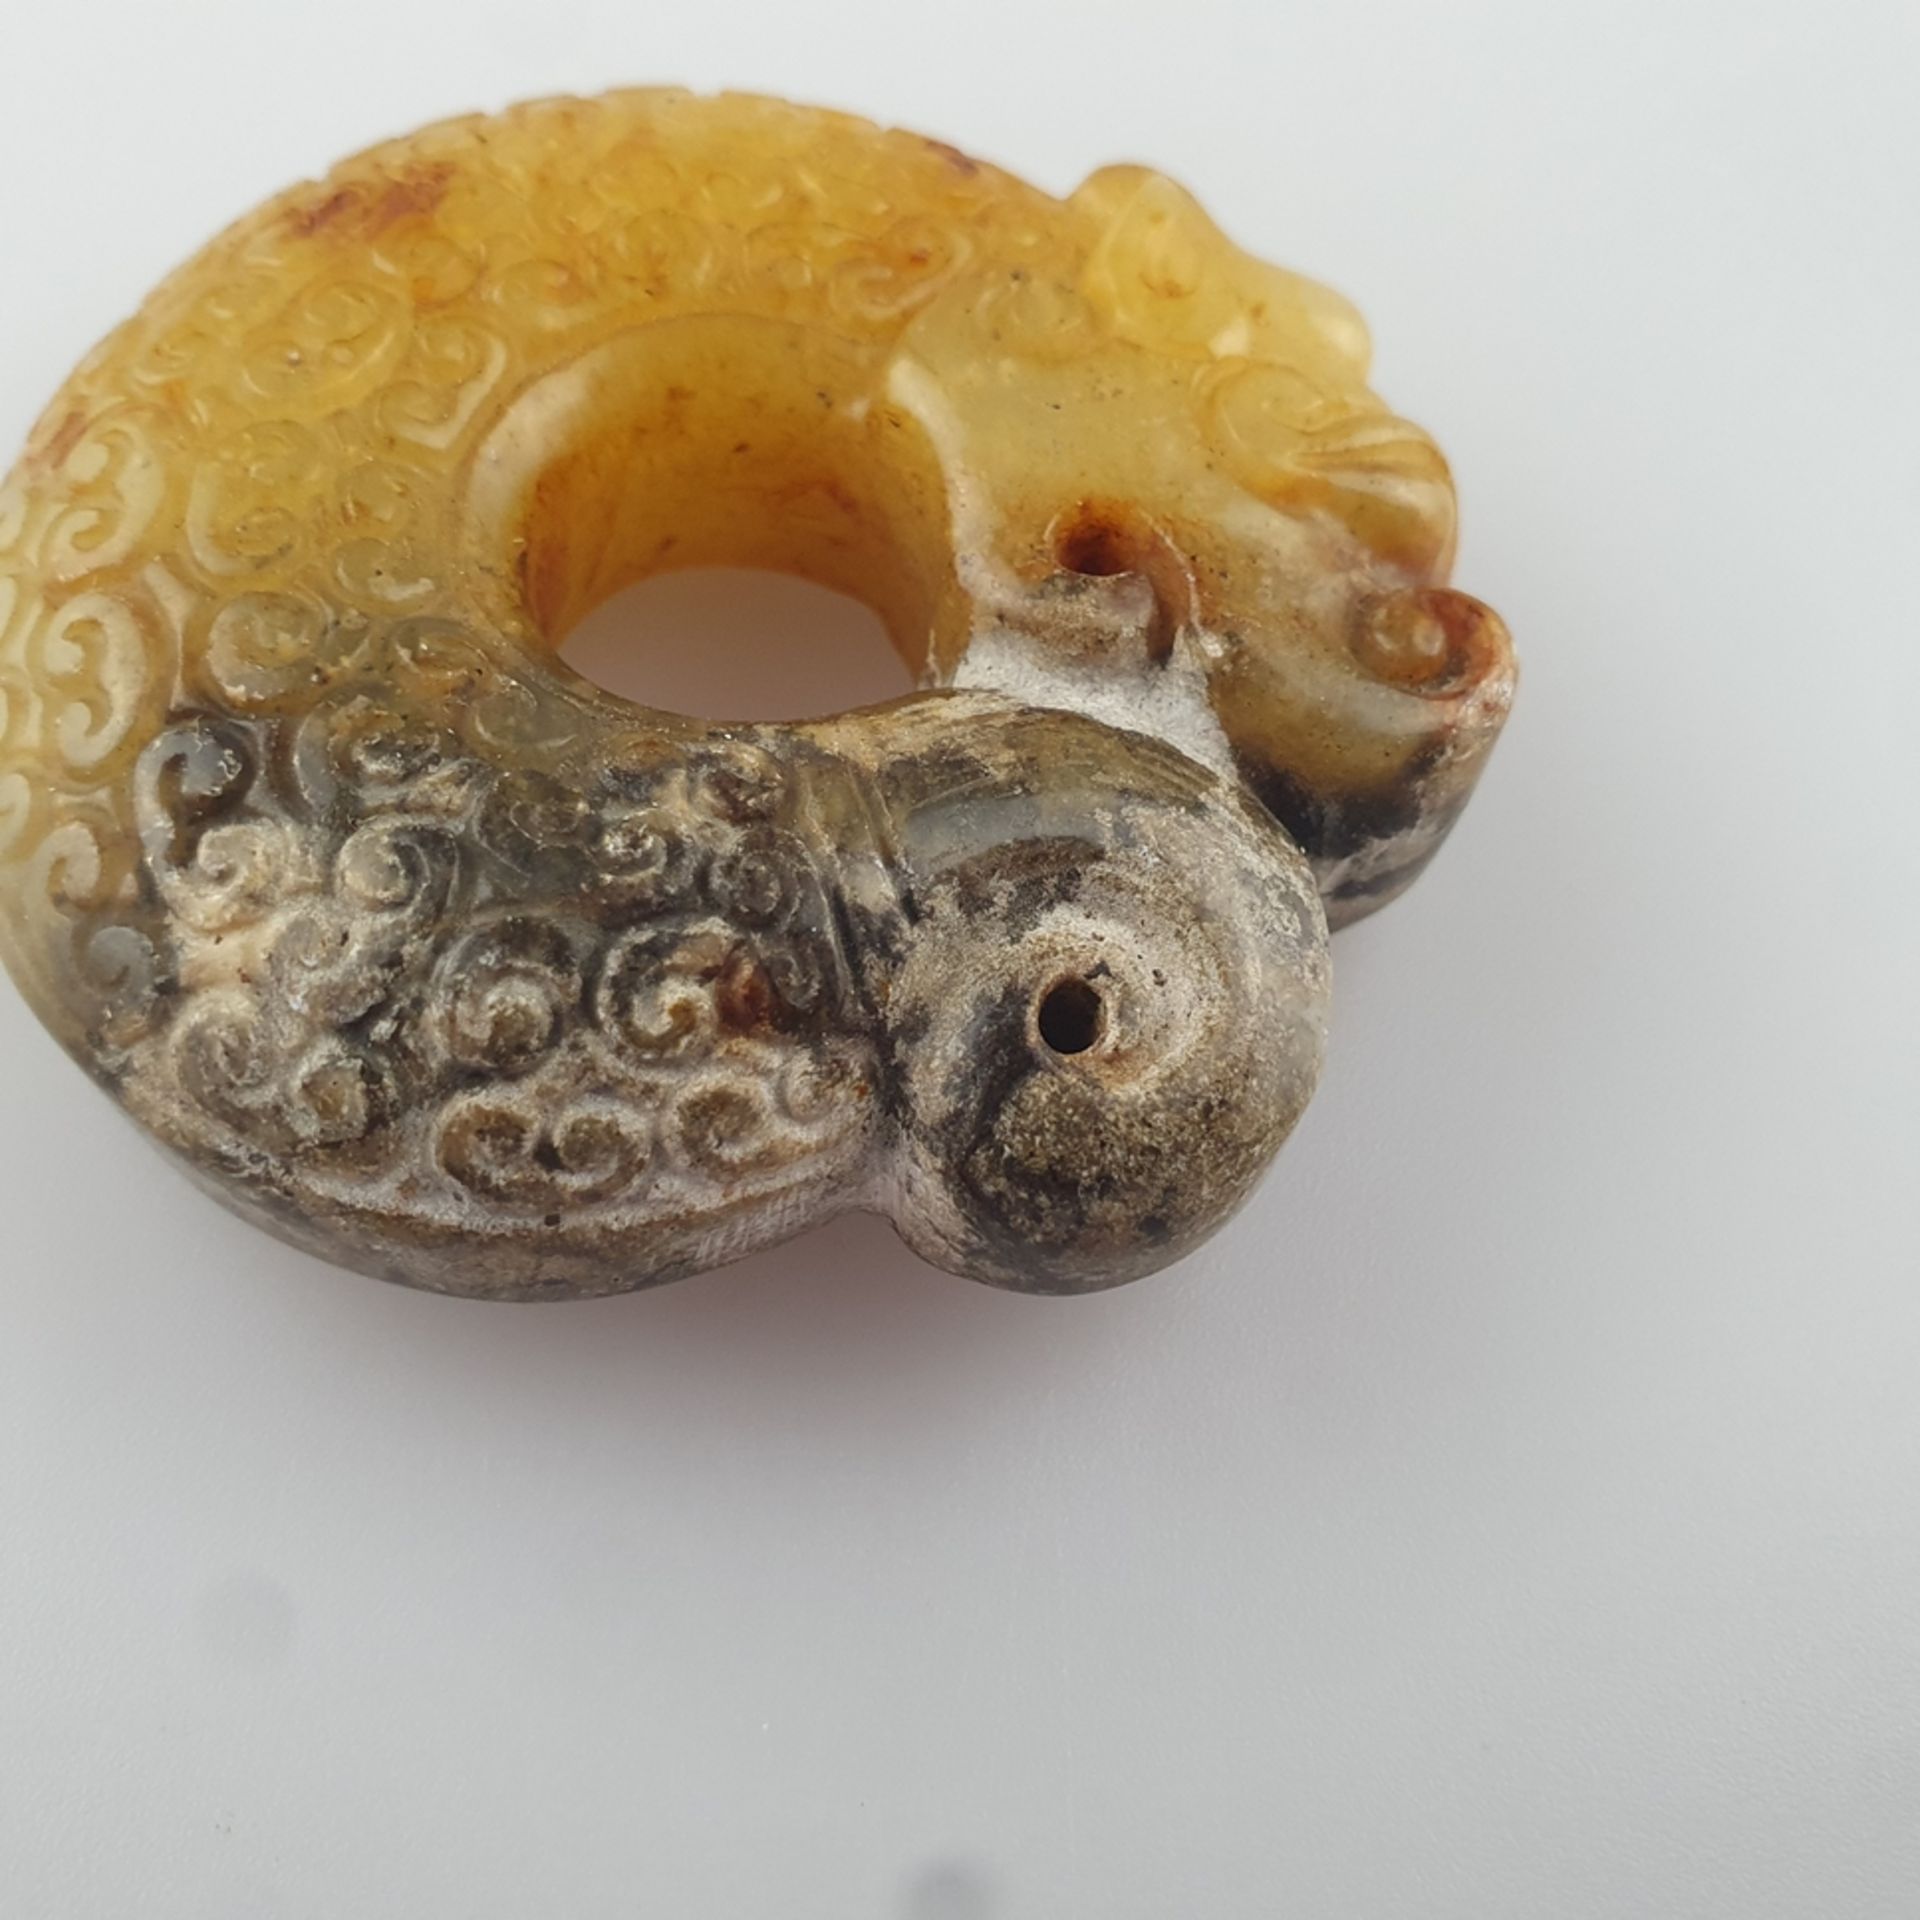 Zhulong ("Schweinsdrache") - China, braun-gelbe Jade, teils kalzifiziert, im Stil der neolithischen - Bild 3 aus 6